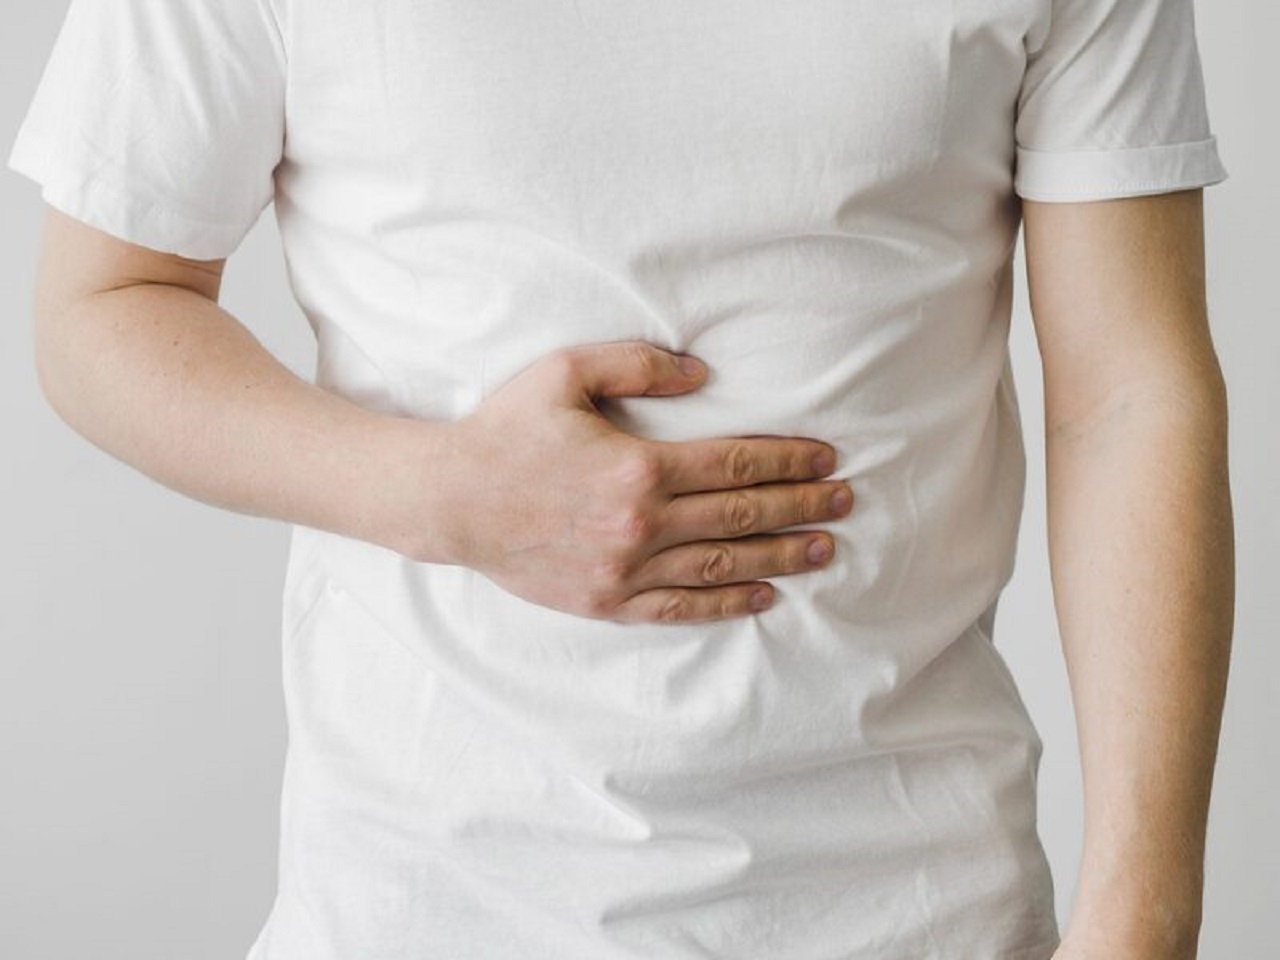 Ngoài việc xoa bóp bụng, còn phương pháp nào khác để giảm đau dạ dày ngay lập tức?
